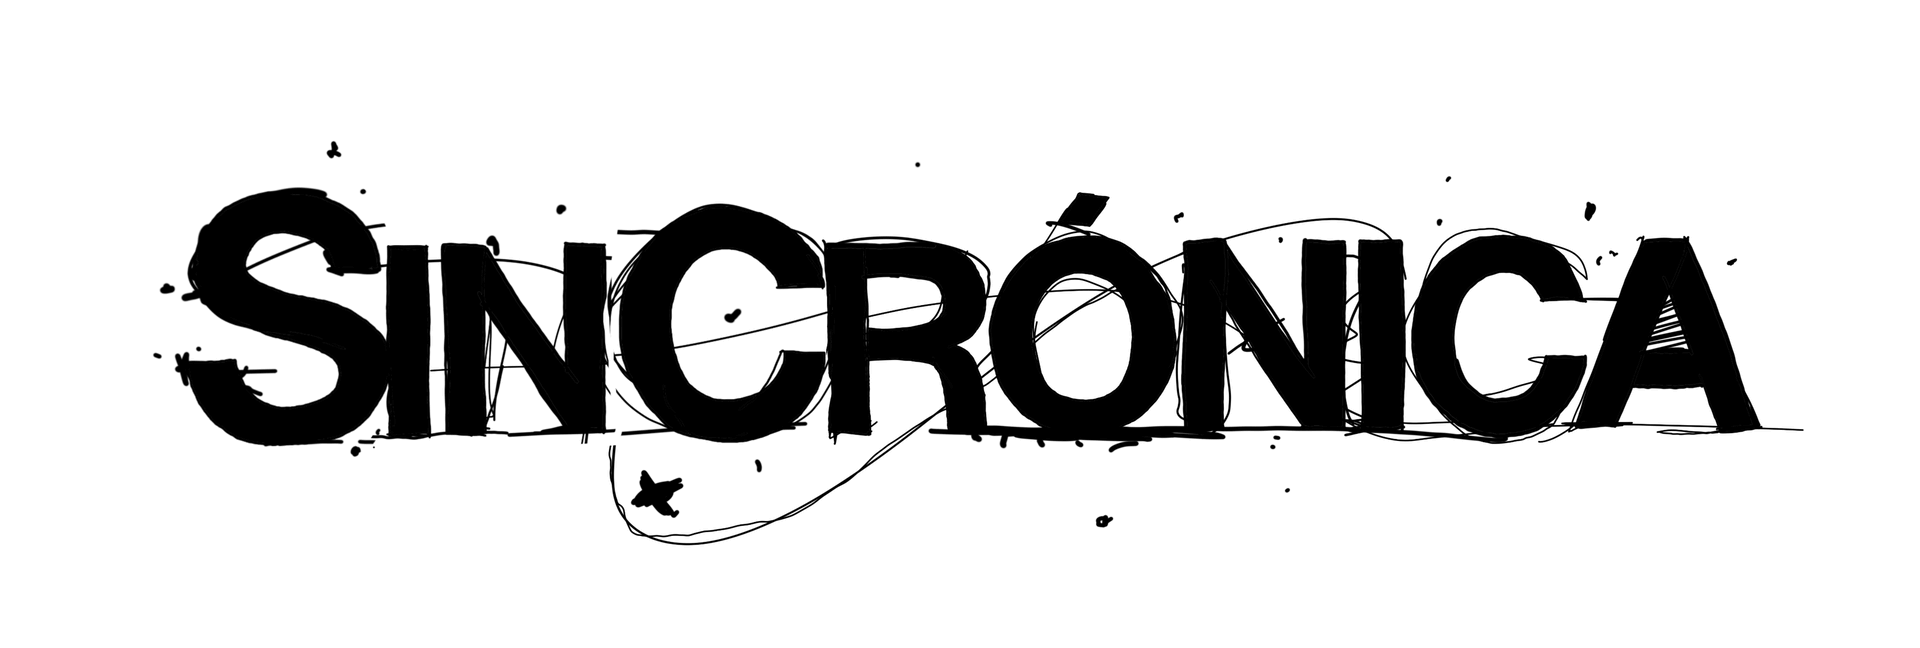 Sincrónica logo